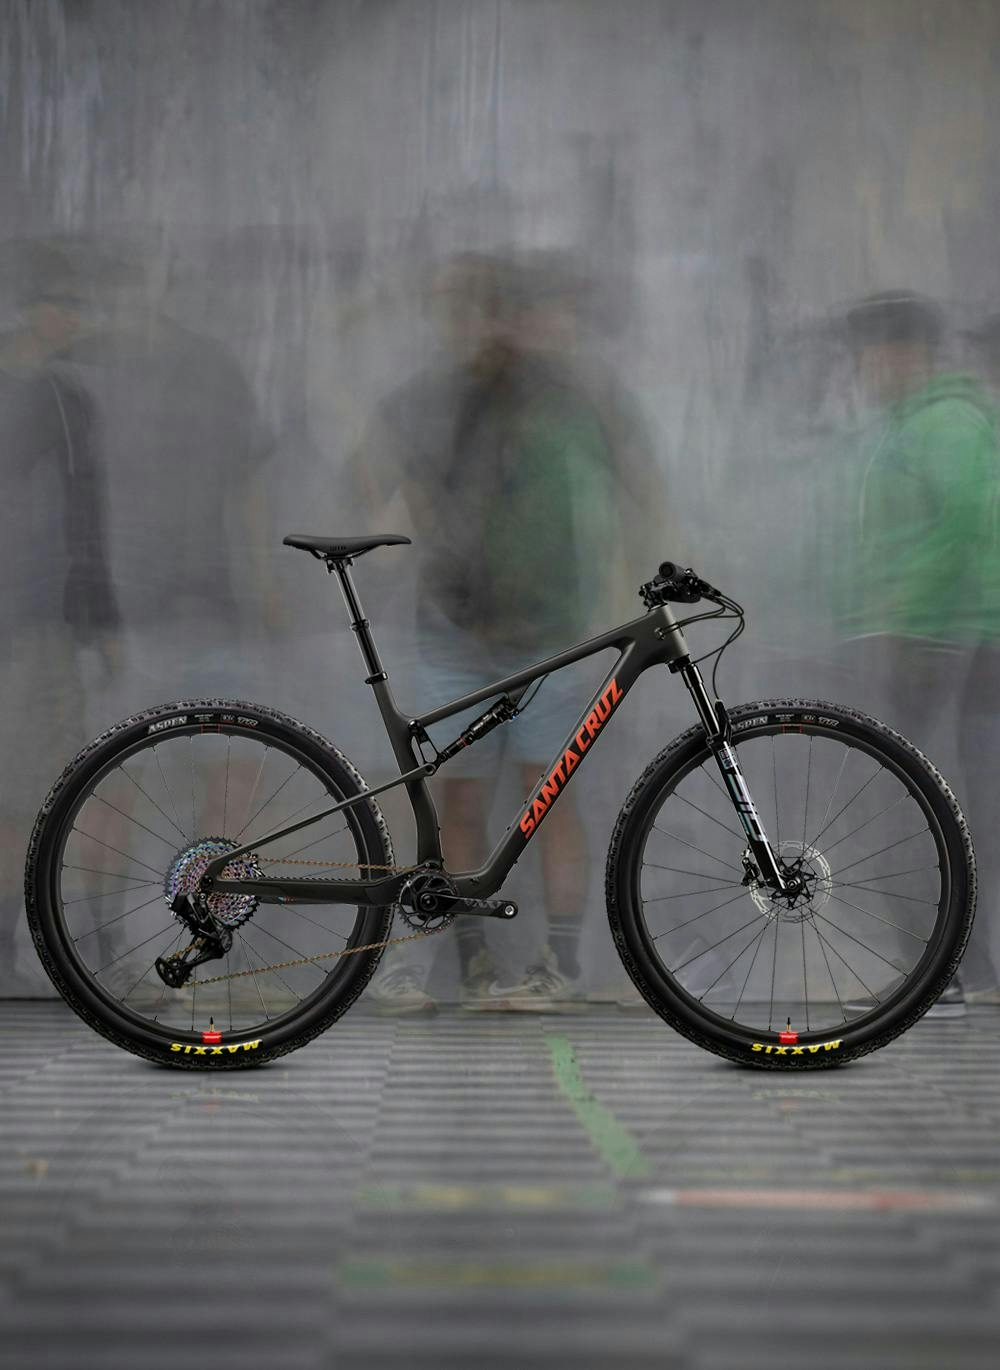 2022 Blur XX1 AXS Reserve XC bike in black